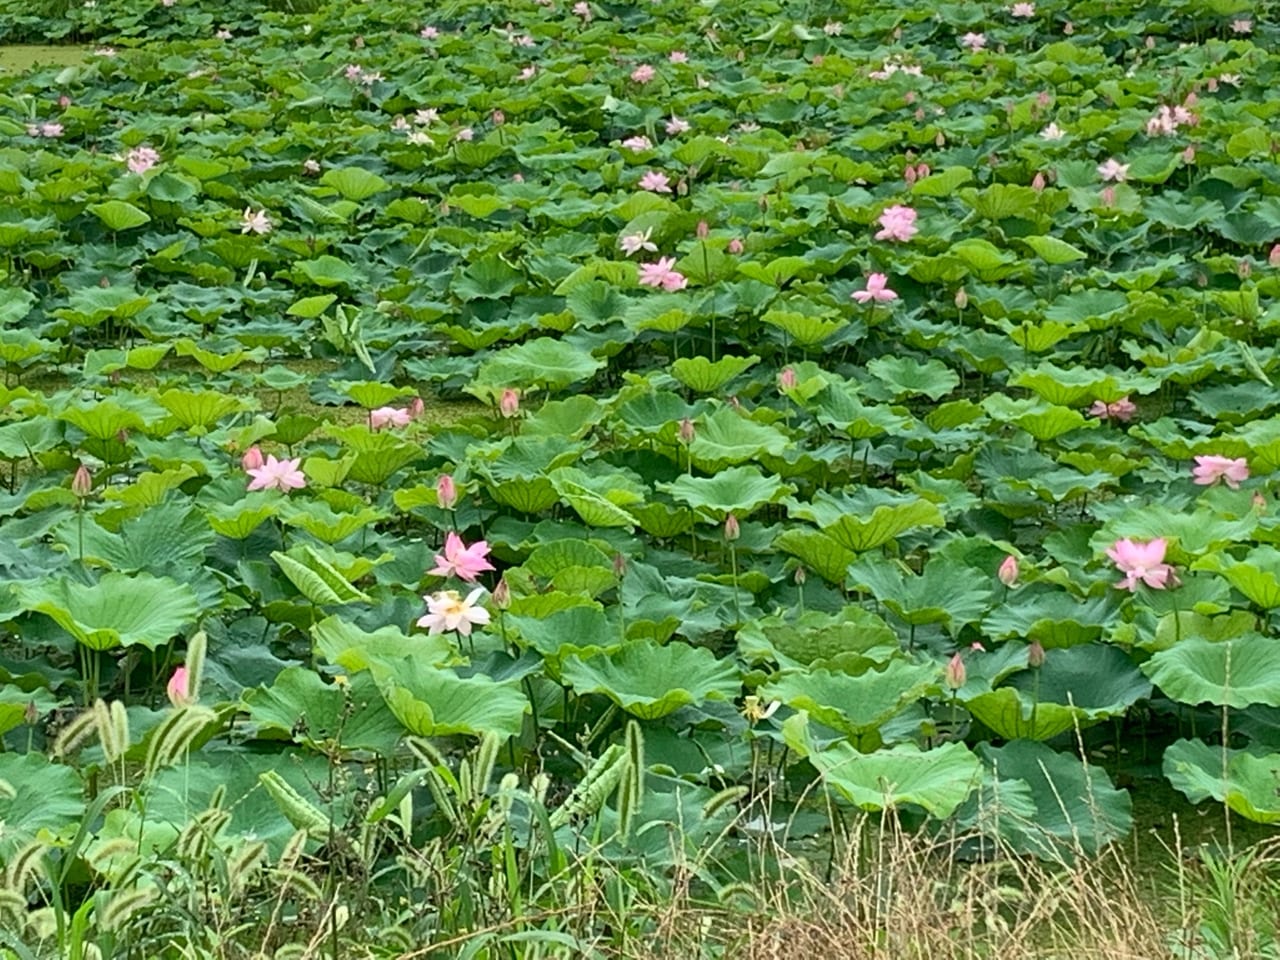 加古川市 ハスの花が池一面に広がっています 号外net 加古川市 高砂市